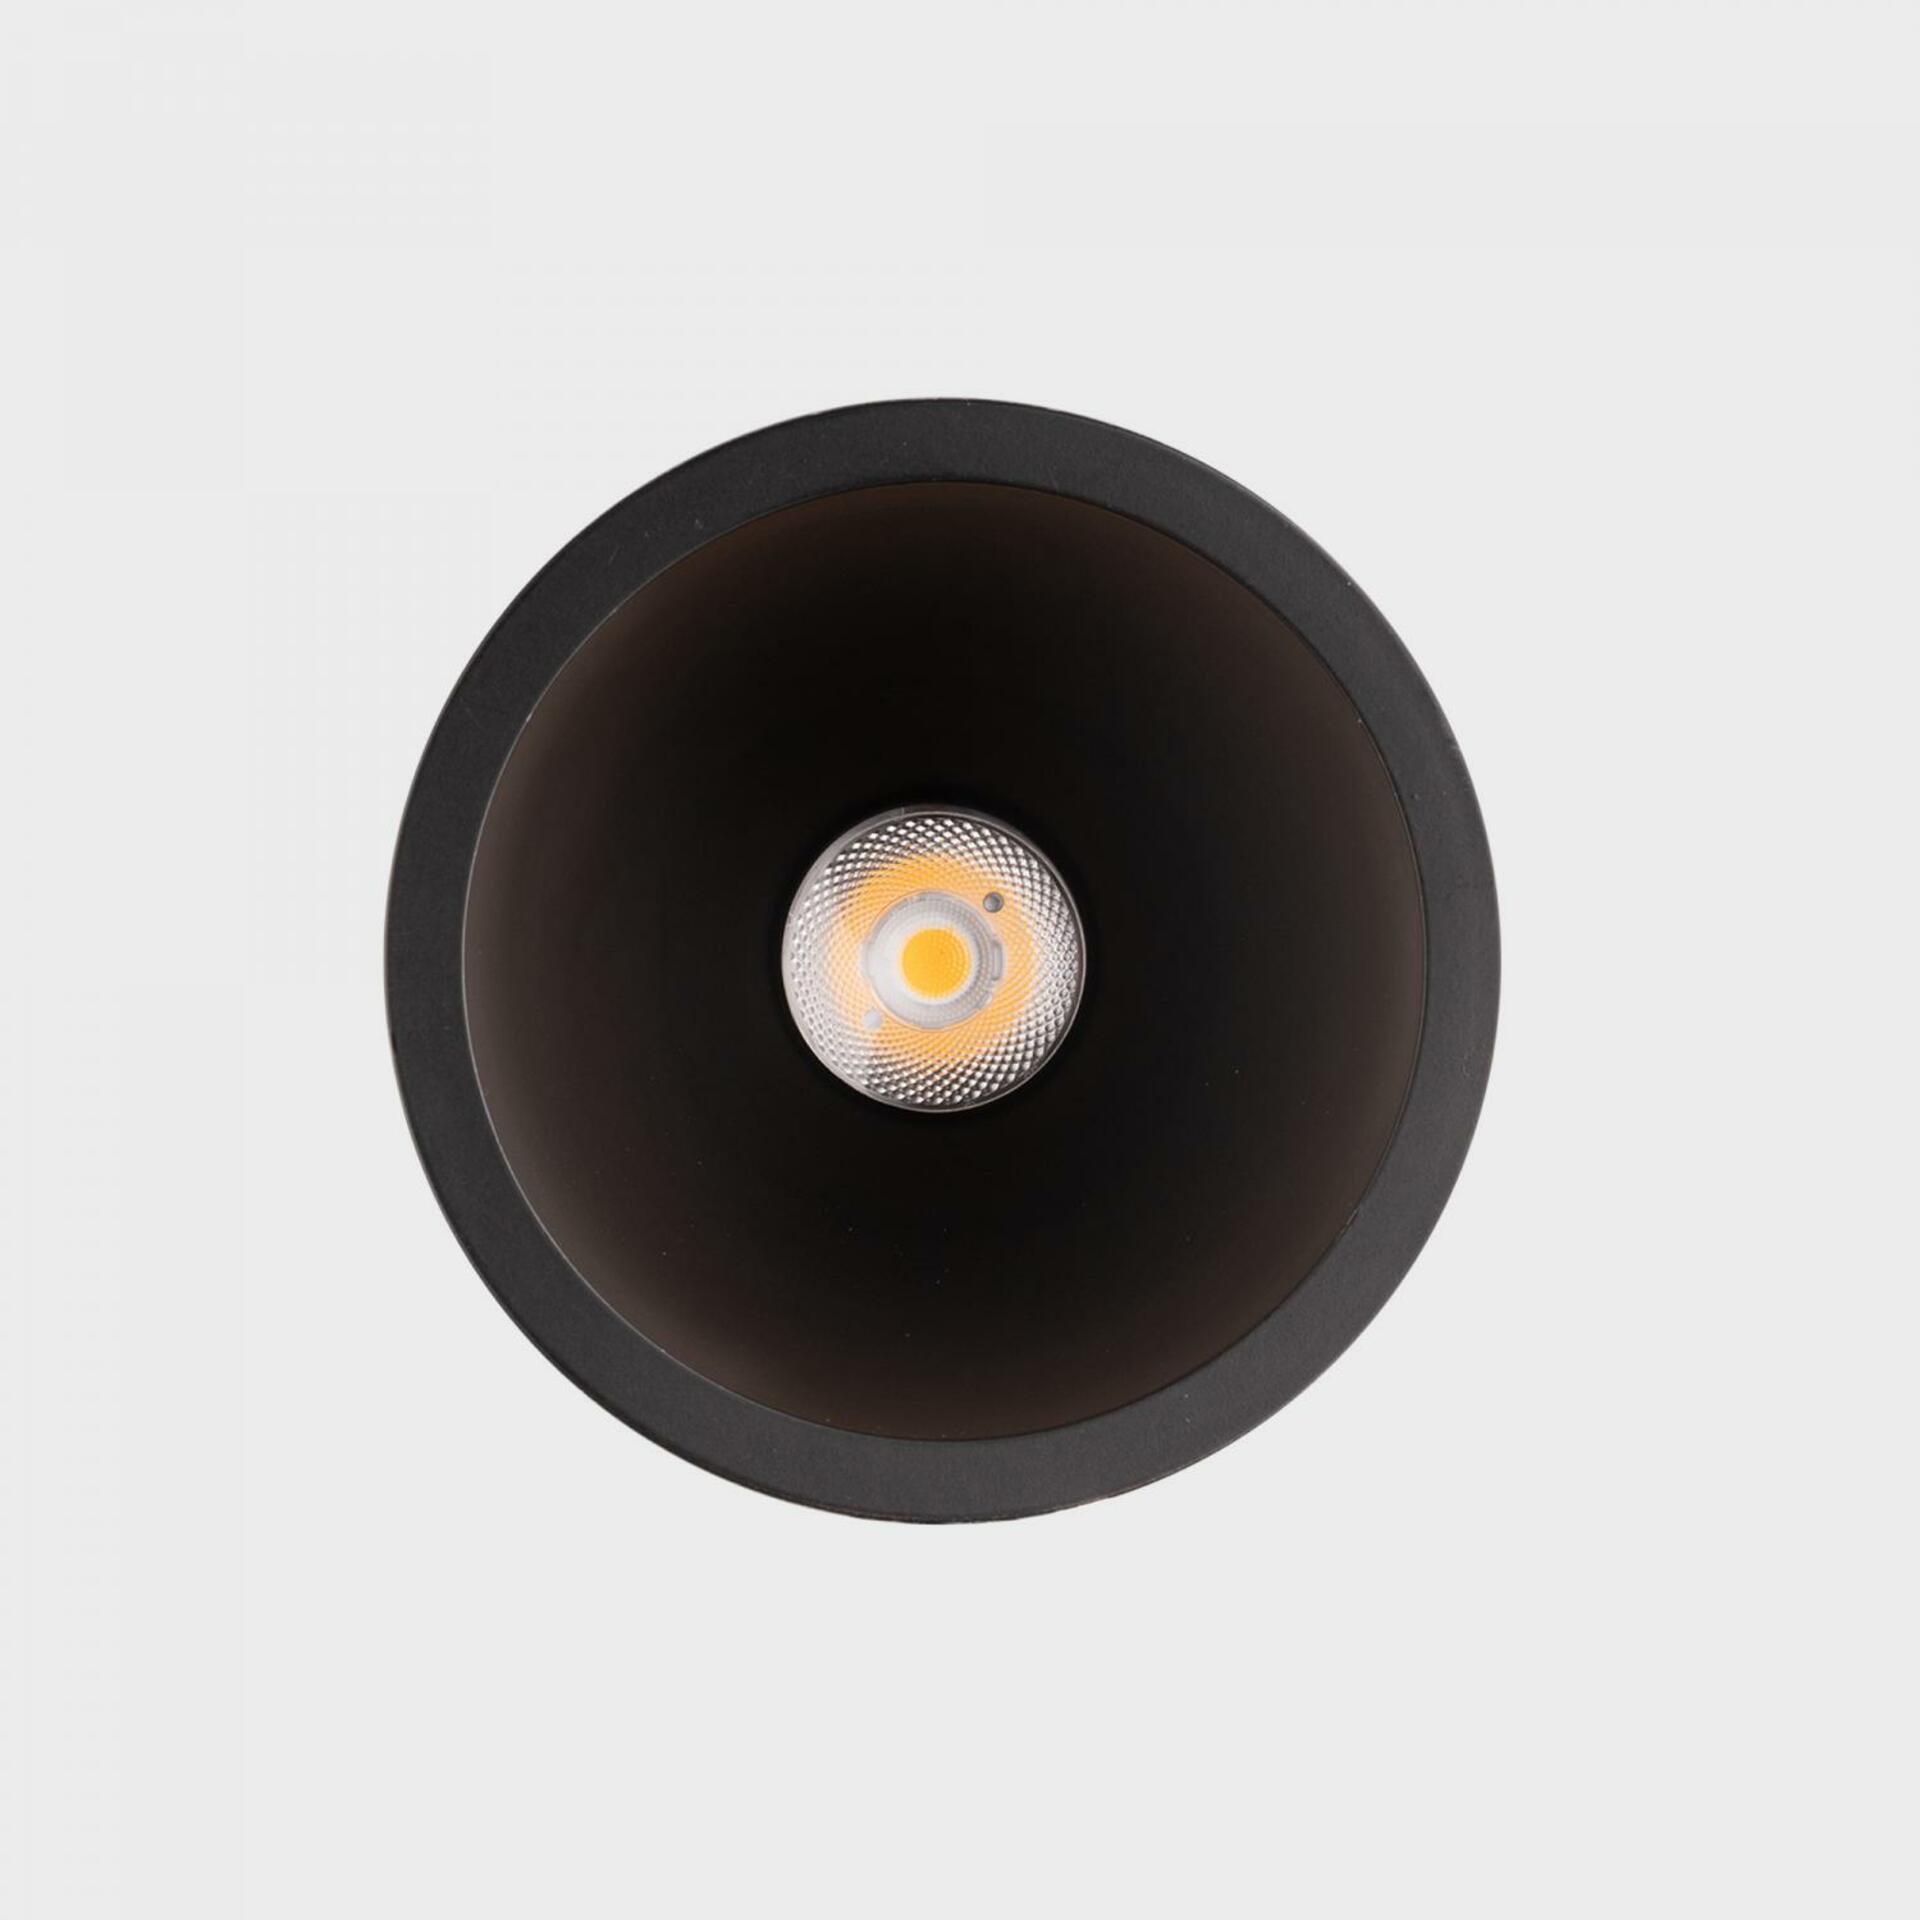 KOHL LIGHTING KOHL-Lighting NOON zapuštěné svítidlo s rámečkem pr.93 mm černá 38° 10 W  CRI 80 2700K 1.10V